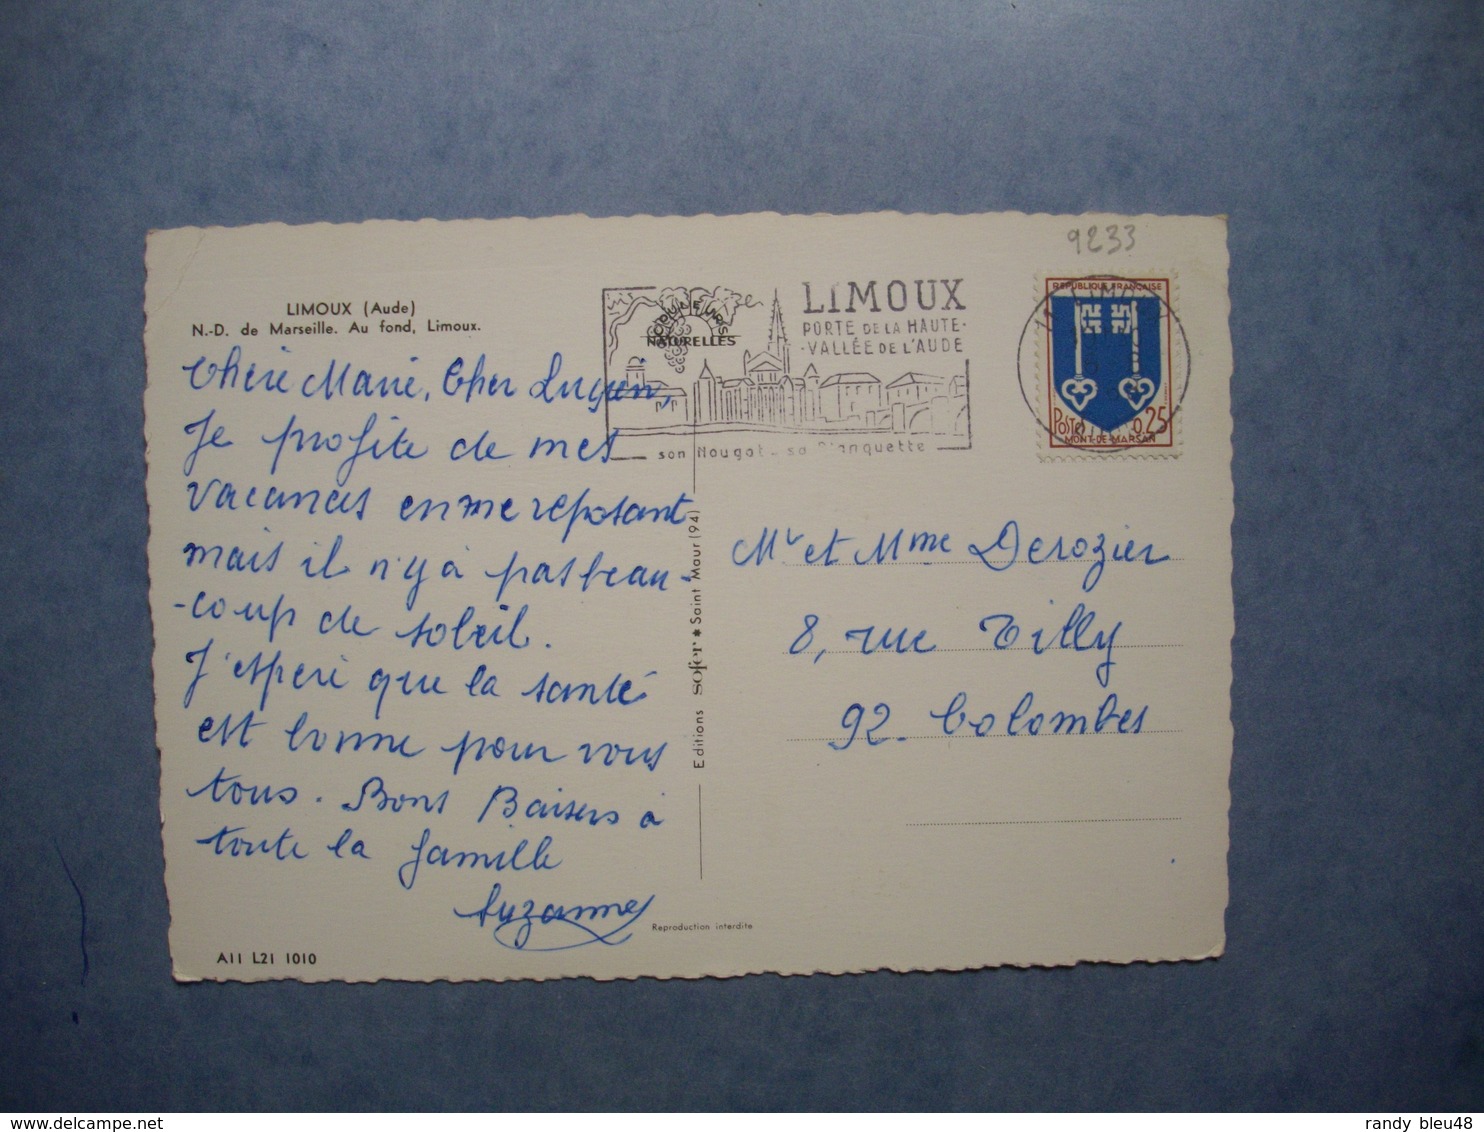 LIMOUX  -  11  -  N.D. De Marseille  -  Au Fond Limoux  -  AUDE - Limoux